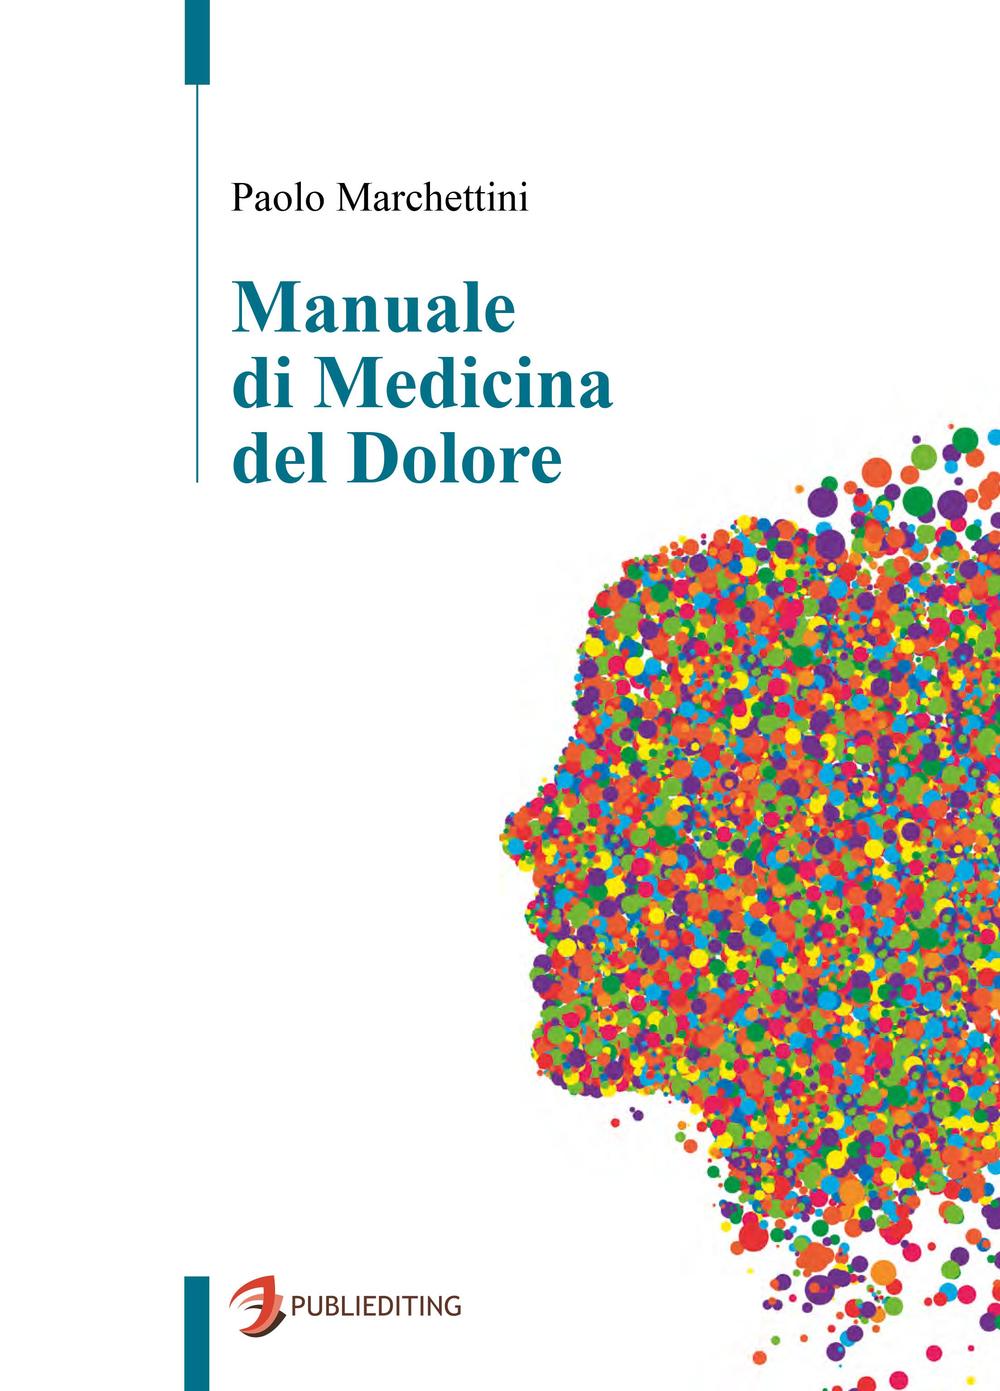 Kniha Manuale di medicina del dolore Paolo Marchettini